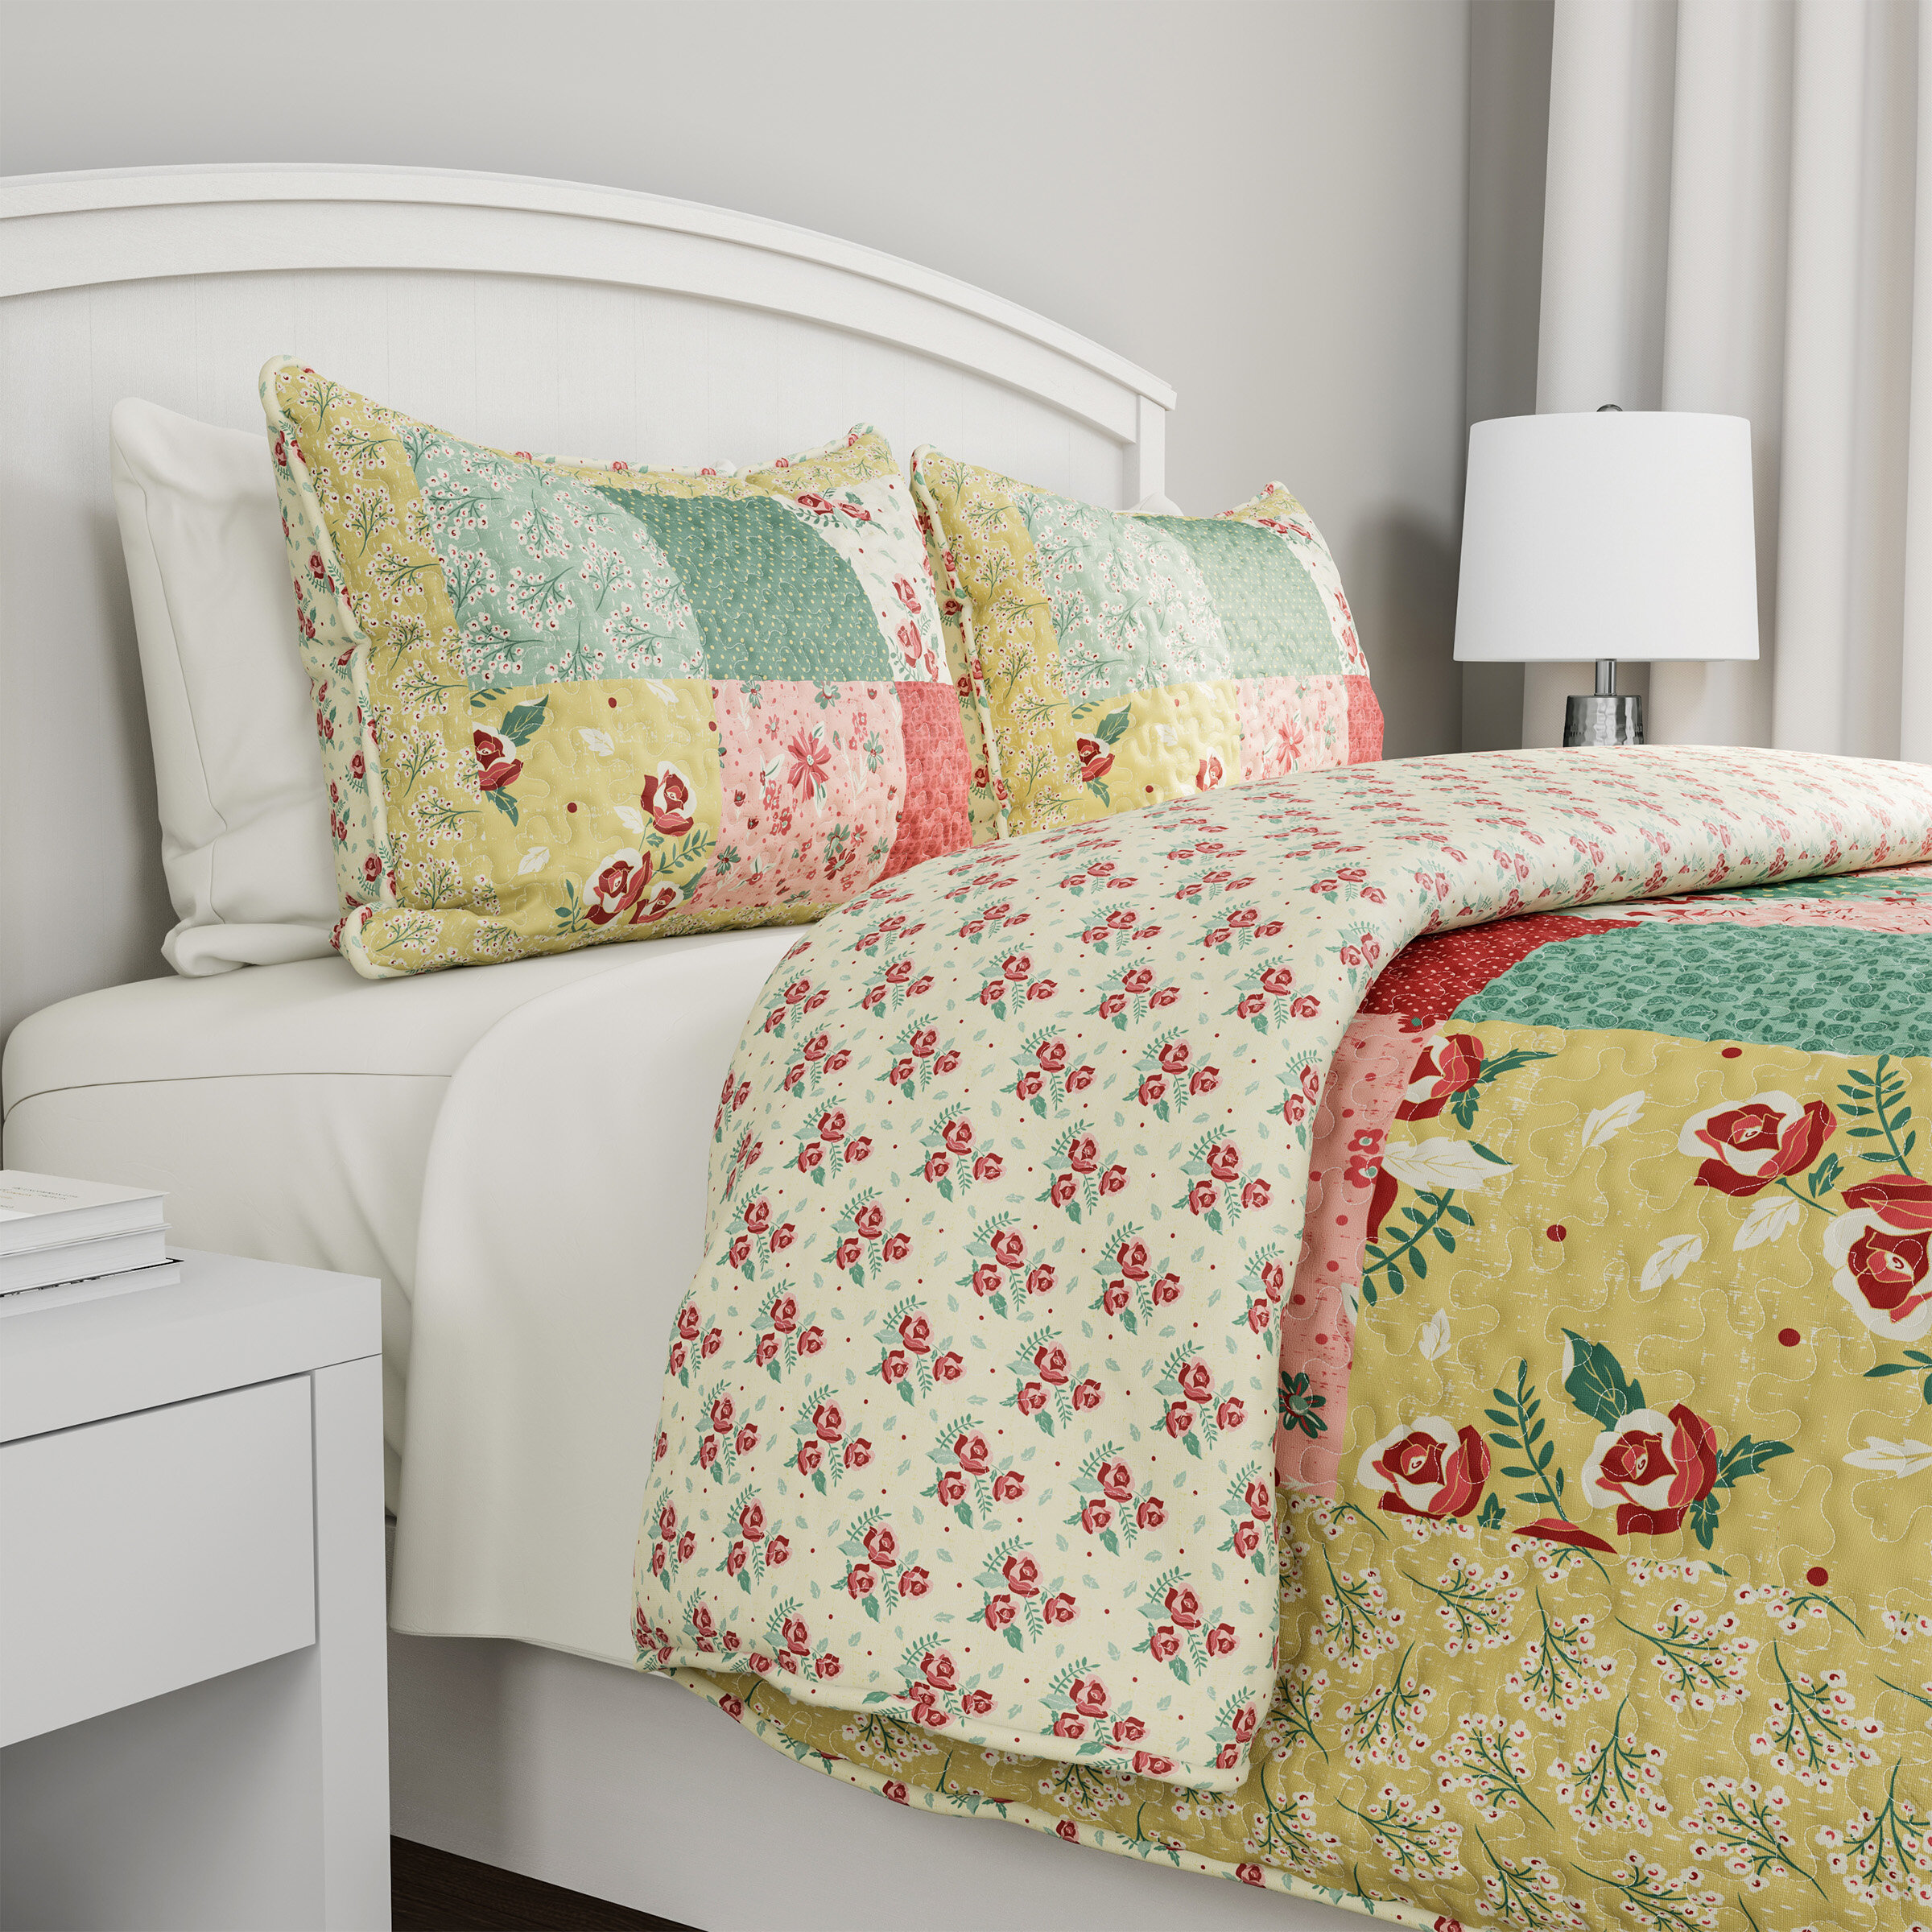 Pylle Hill Floral Cotton 3-Piece Reversible Quilt Bedding Set